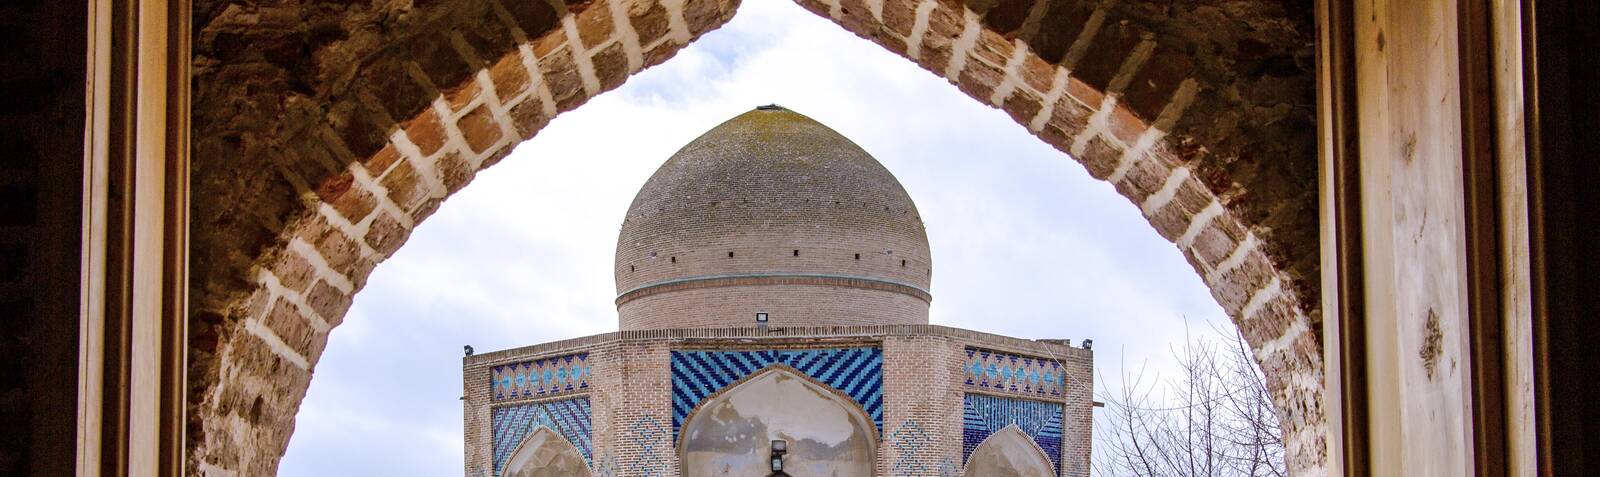 ضريح السيد أمين الدين جبرائيل،مقبرة شیخ کلخوران